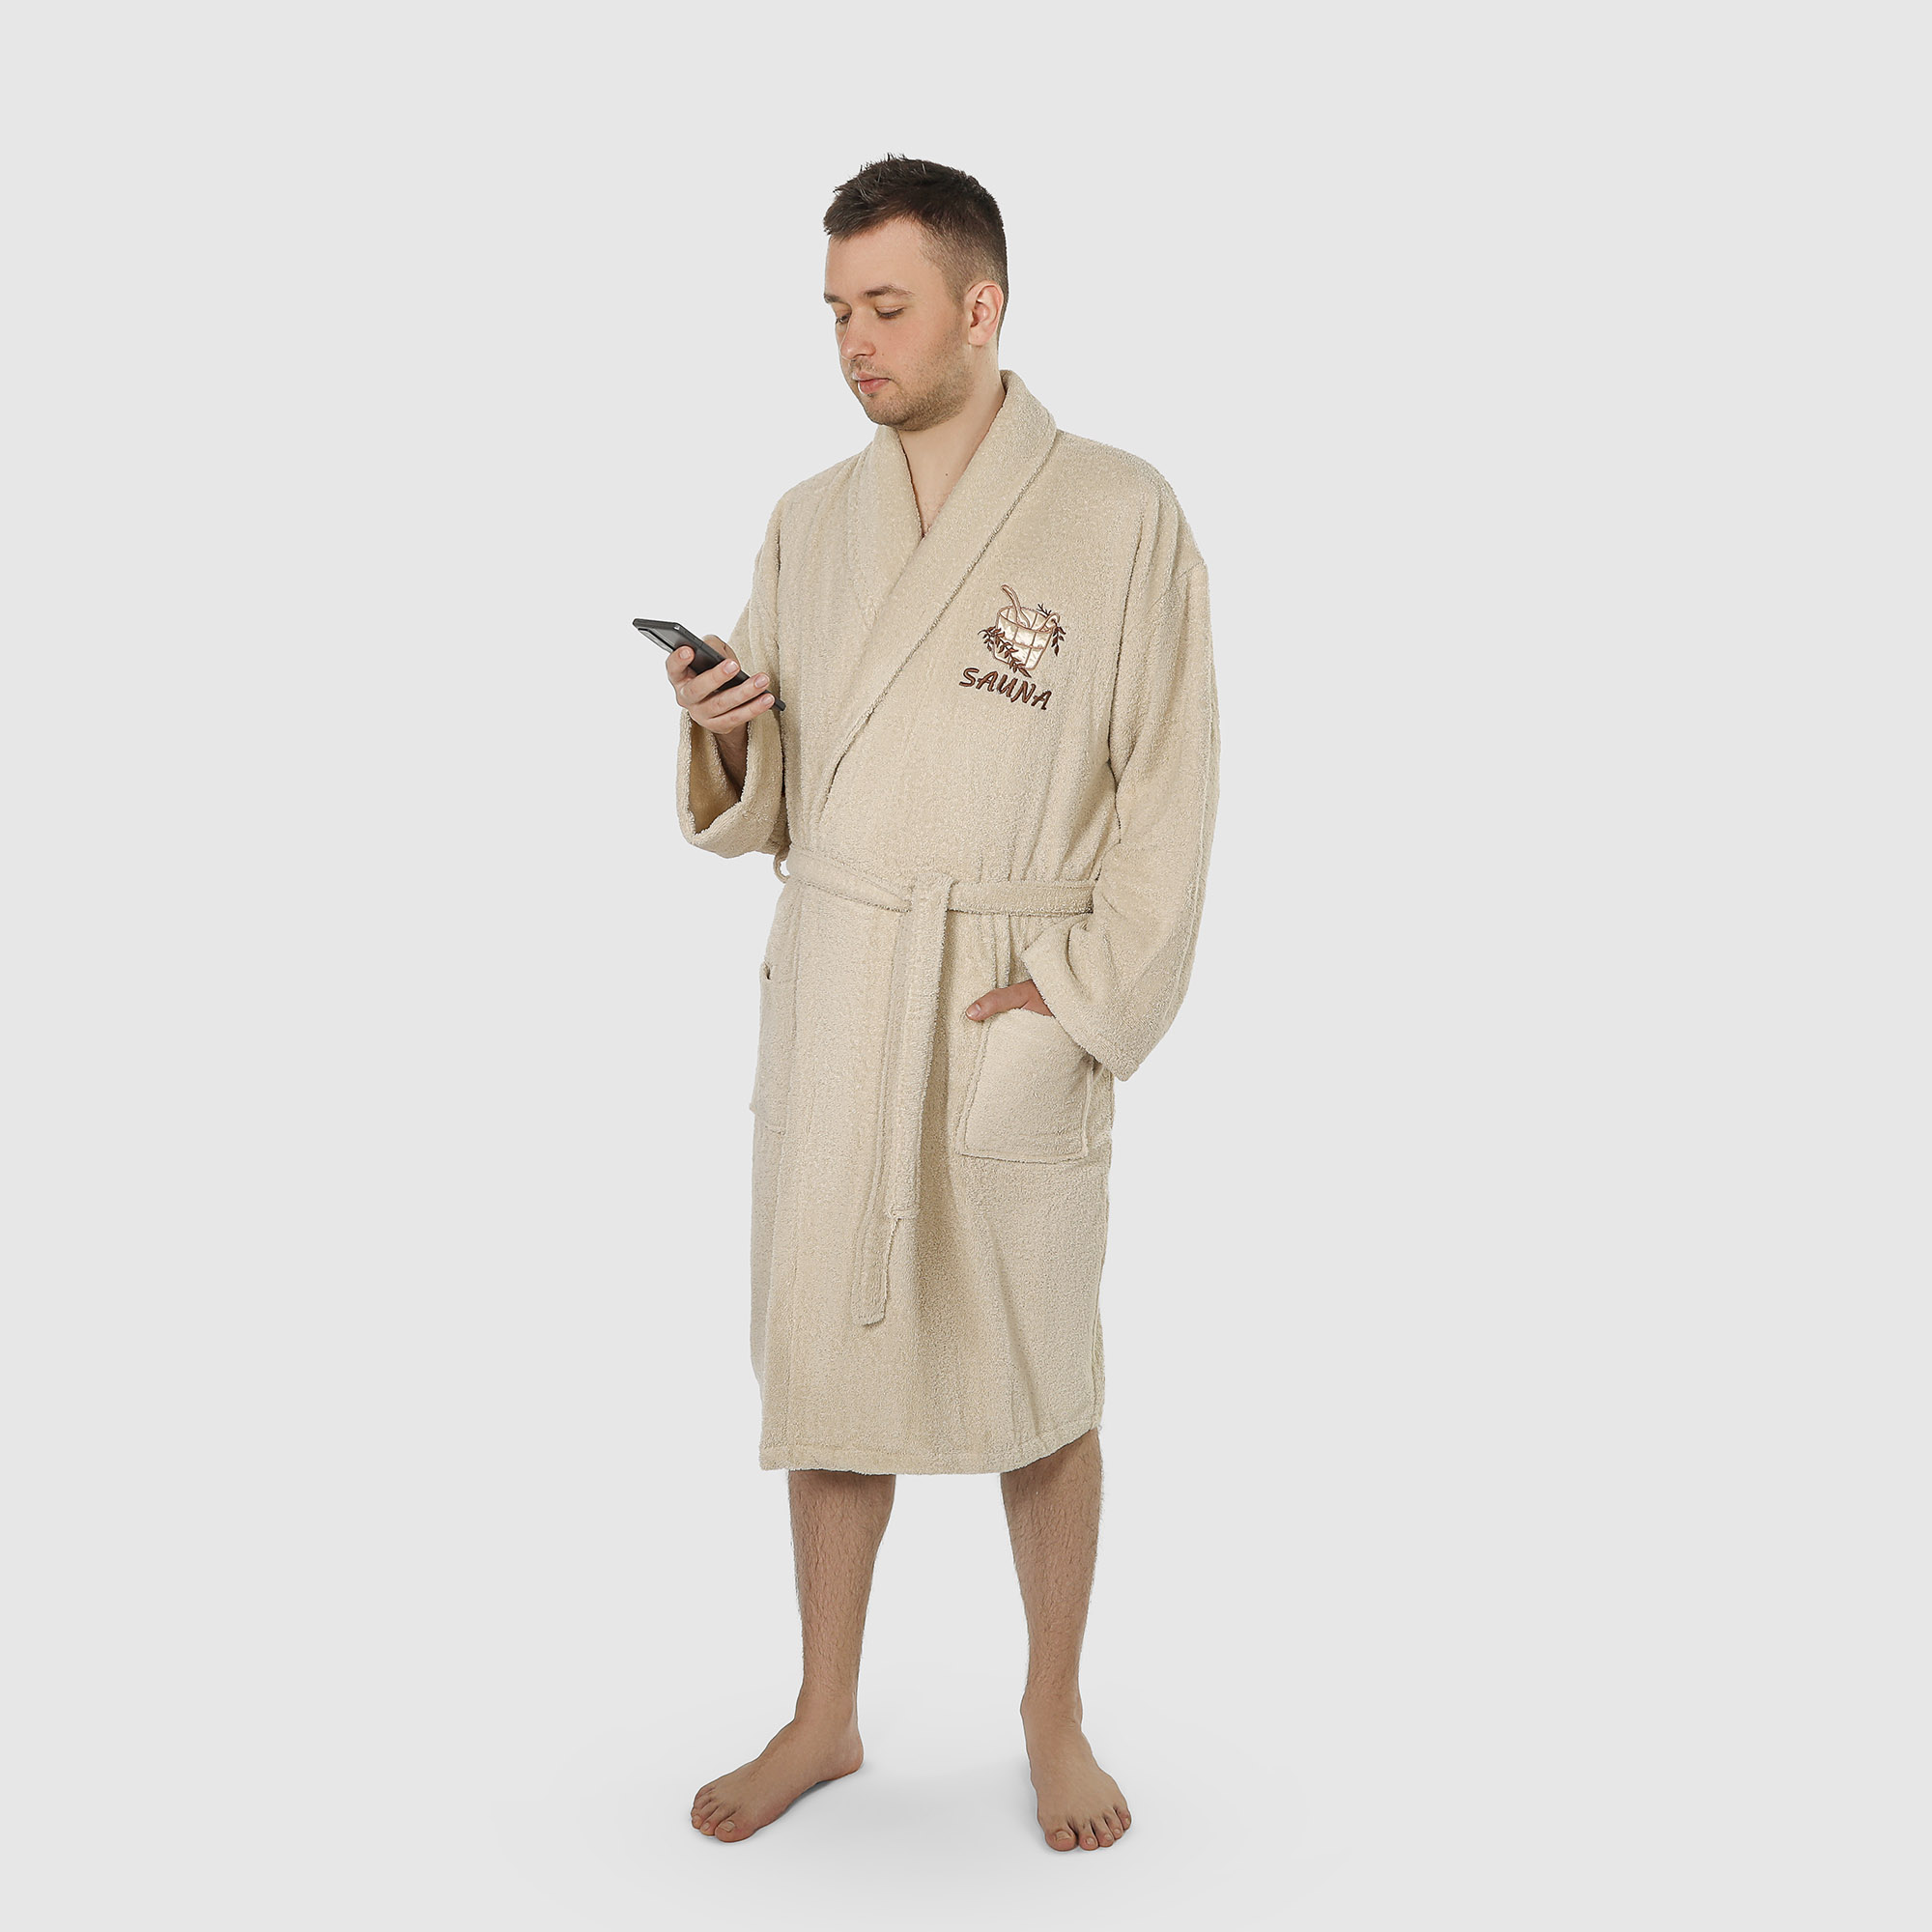 Халат мужской махровый с воротником Asil sauna brown m цена и фото